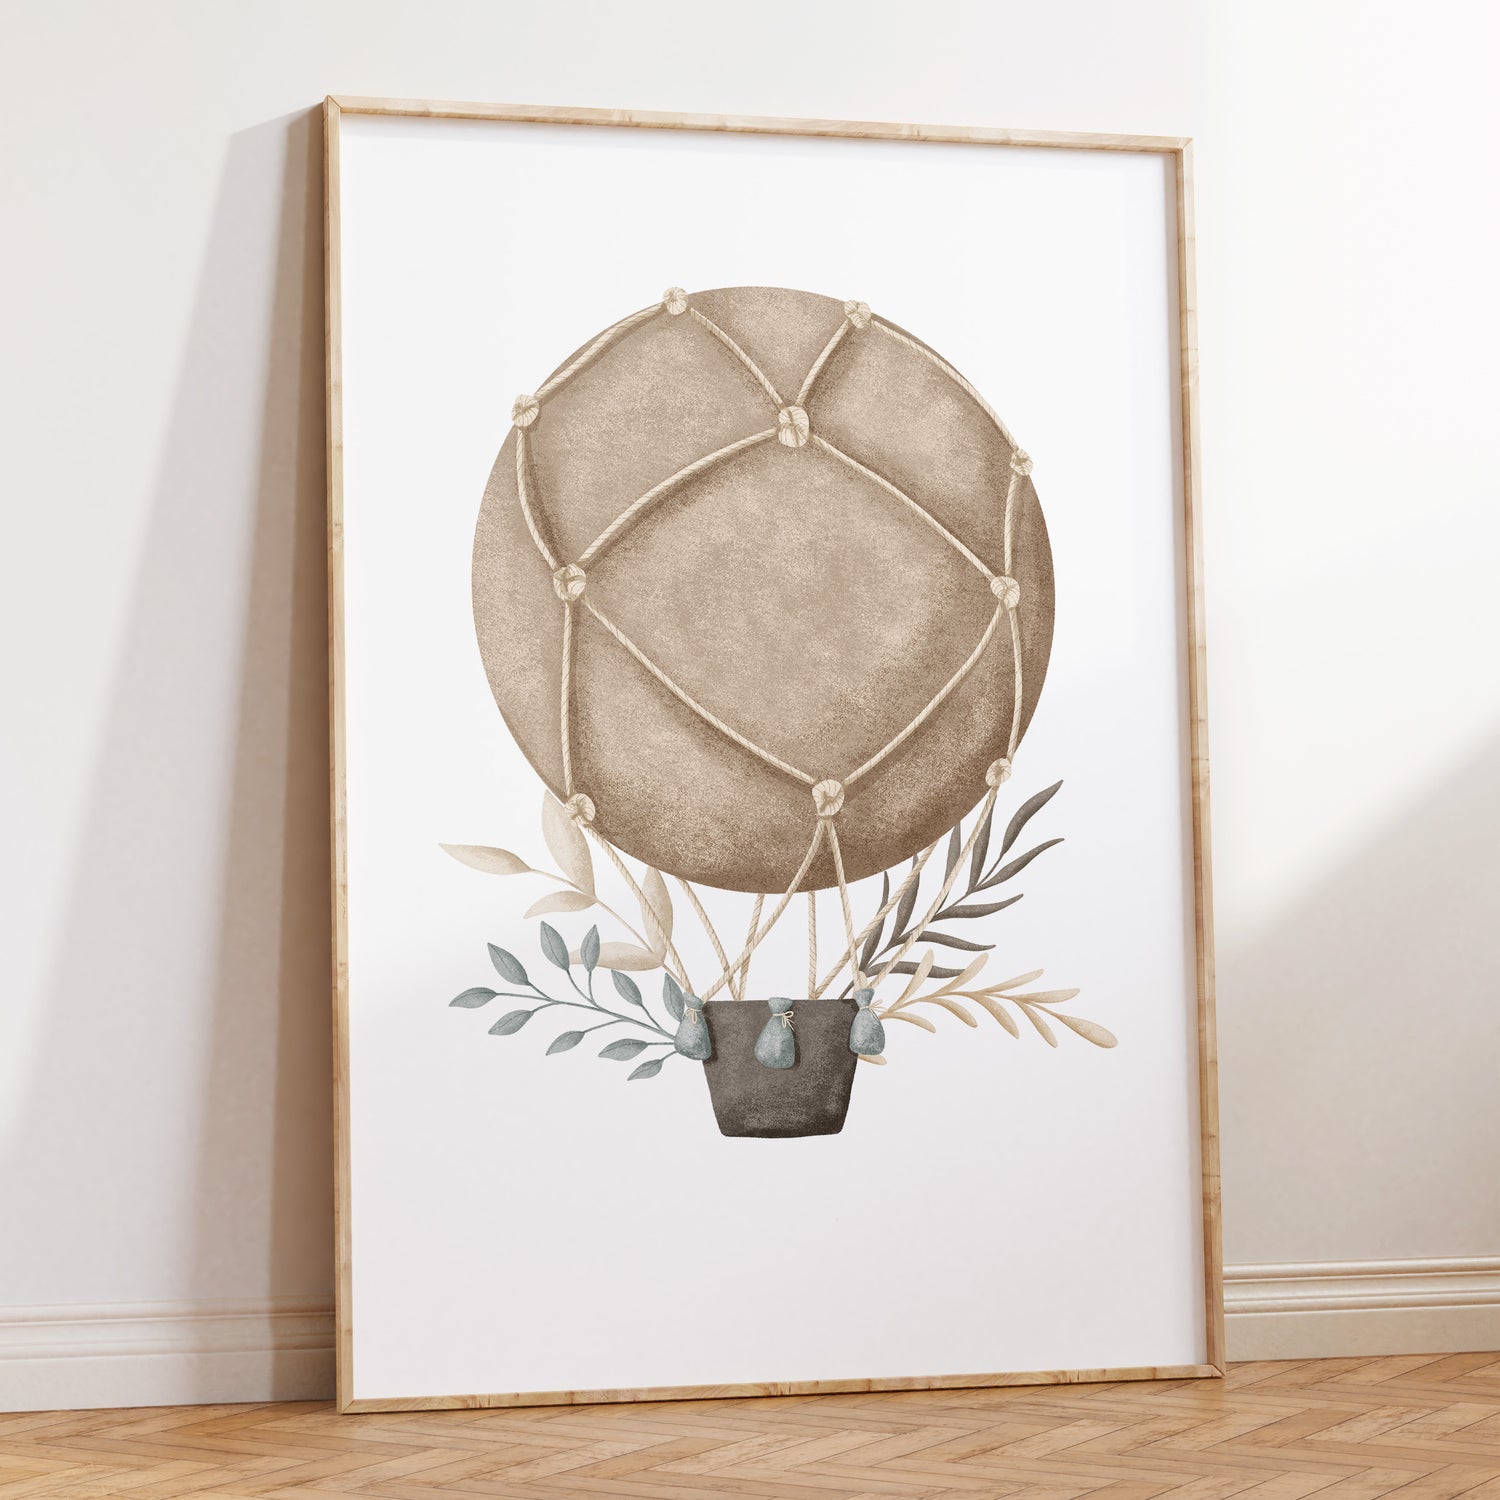 Boho Hot Air Balloon Print